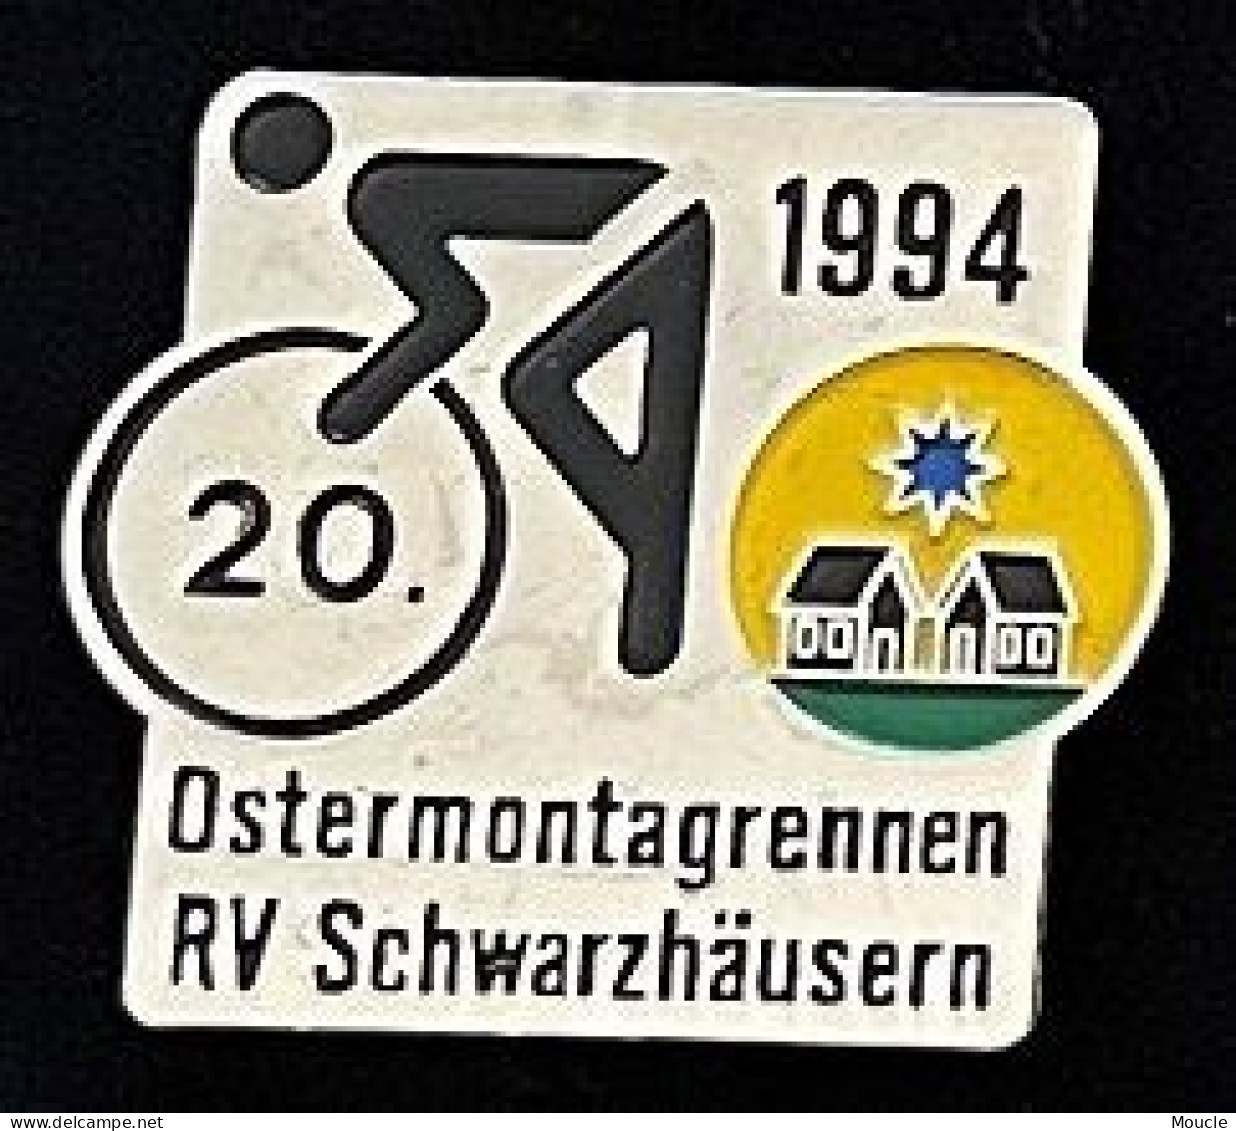 CYCLISME - VELO - BIKE - CYCLISTE - CYCLES - OSTERMONTAGGRENNEN RV SCHWARZHÄUSERN - 1994 - 20 - SUISSE - SCHWEIZ - (33) - Wielrennen